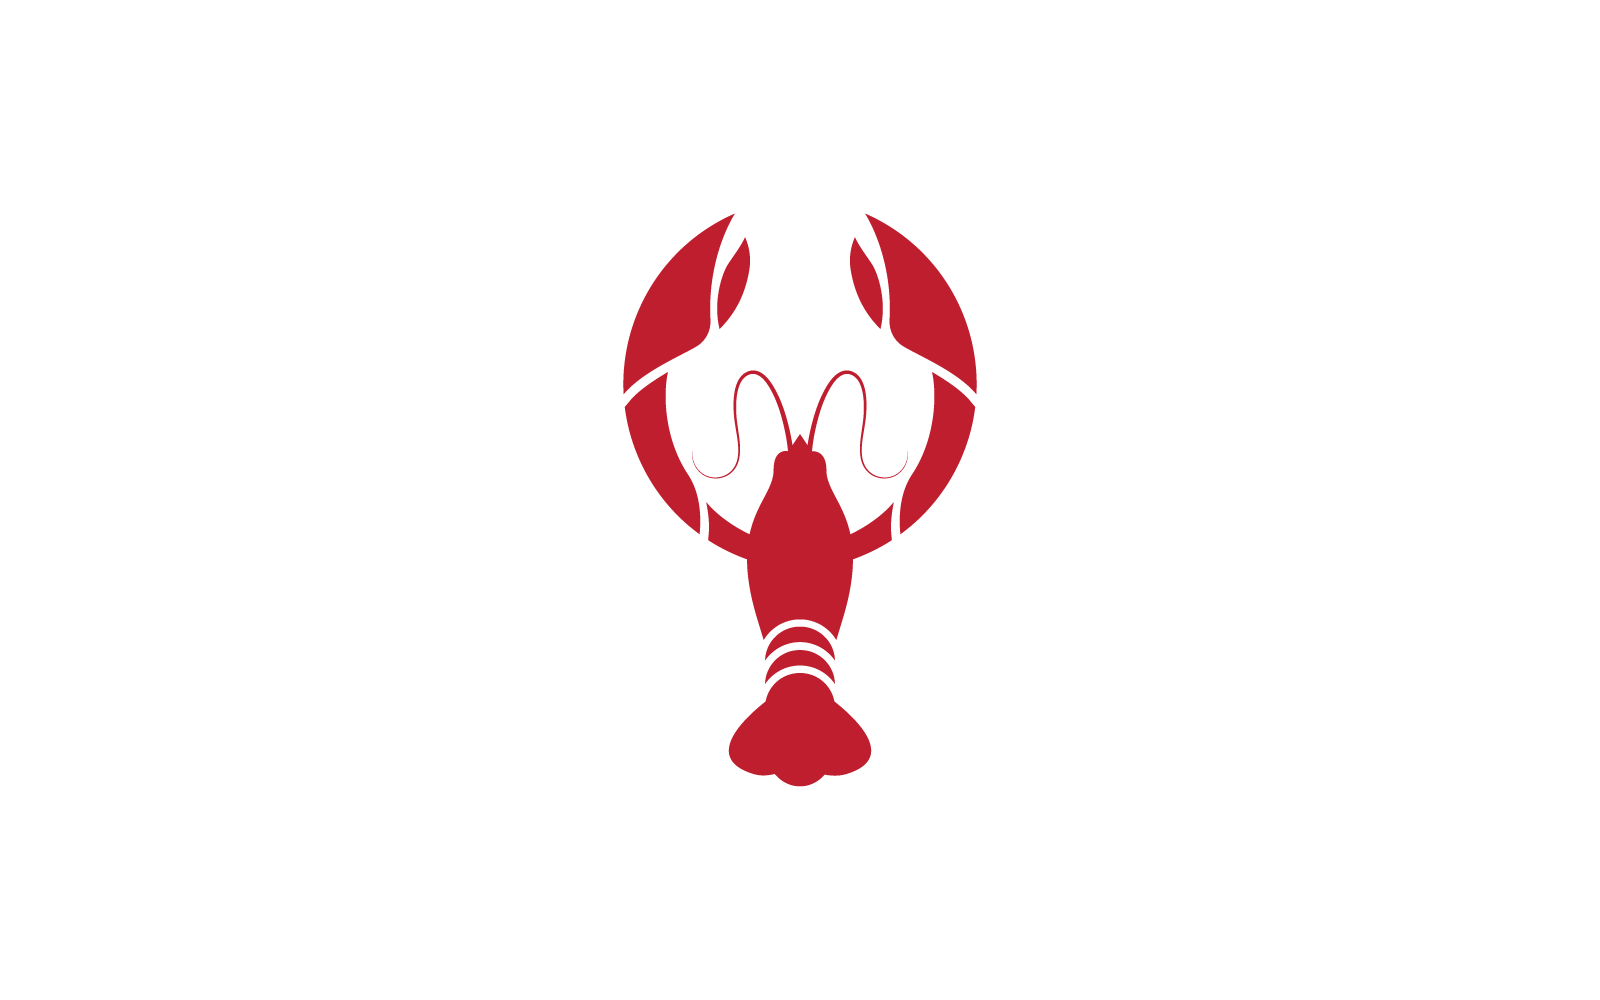 Lobster logo illustration vector template